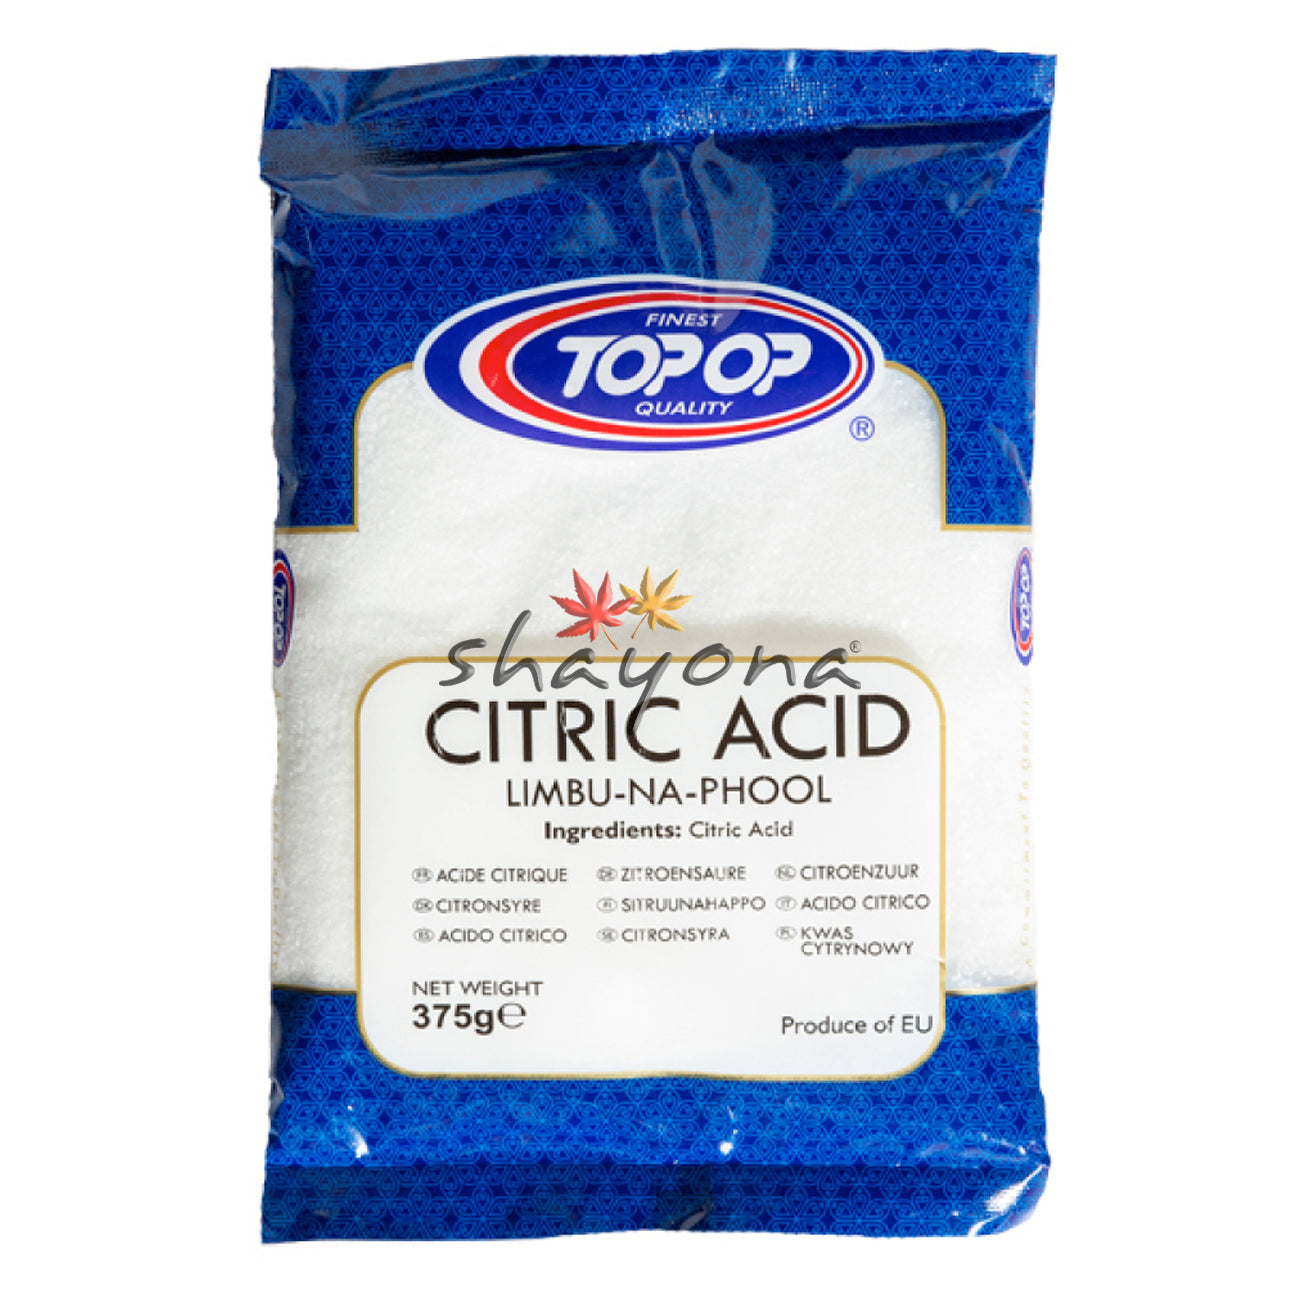 TopOp Citric Acid